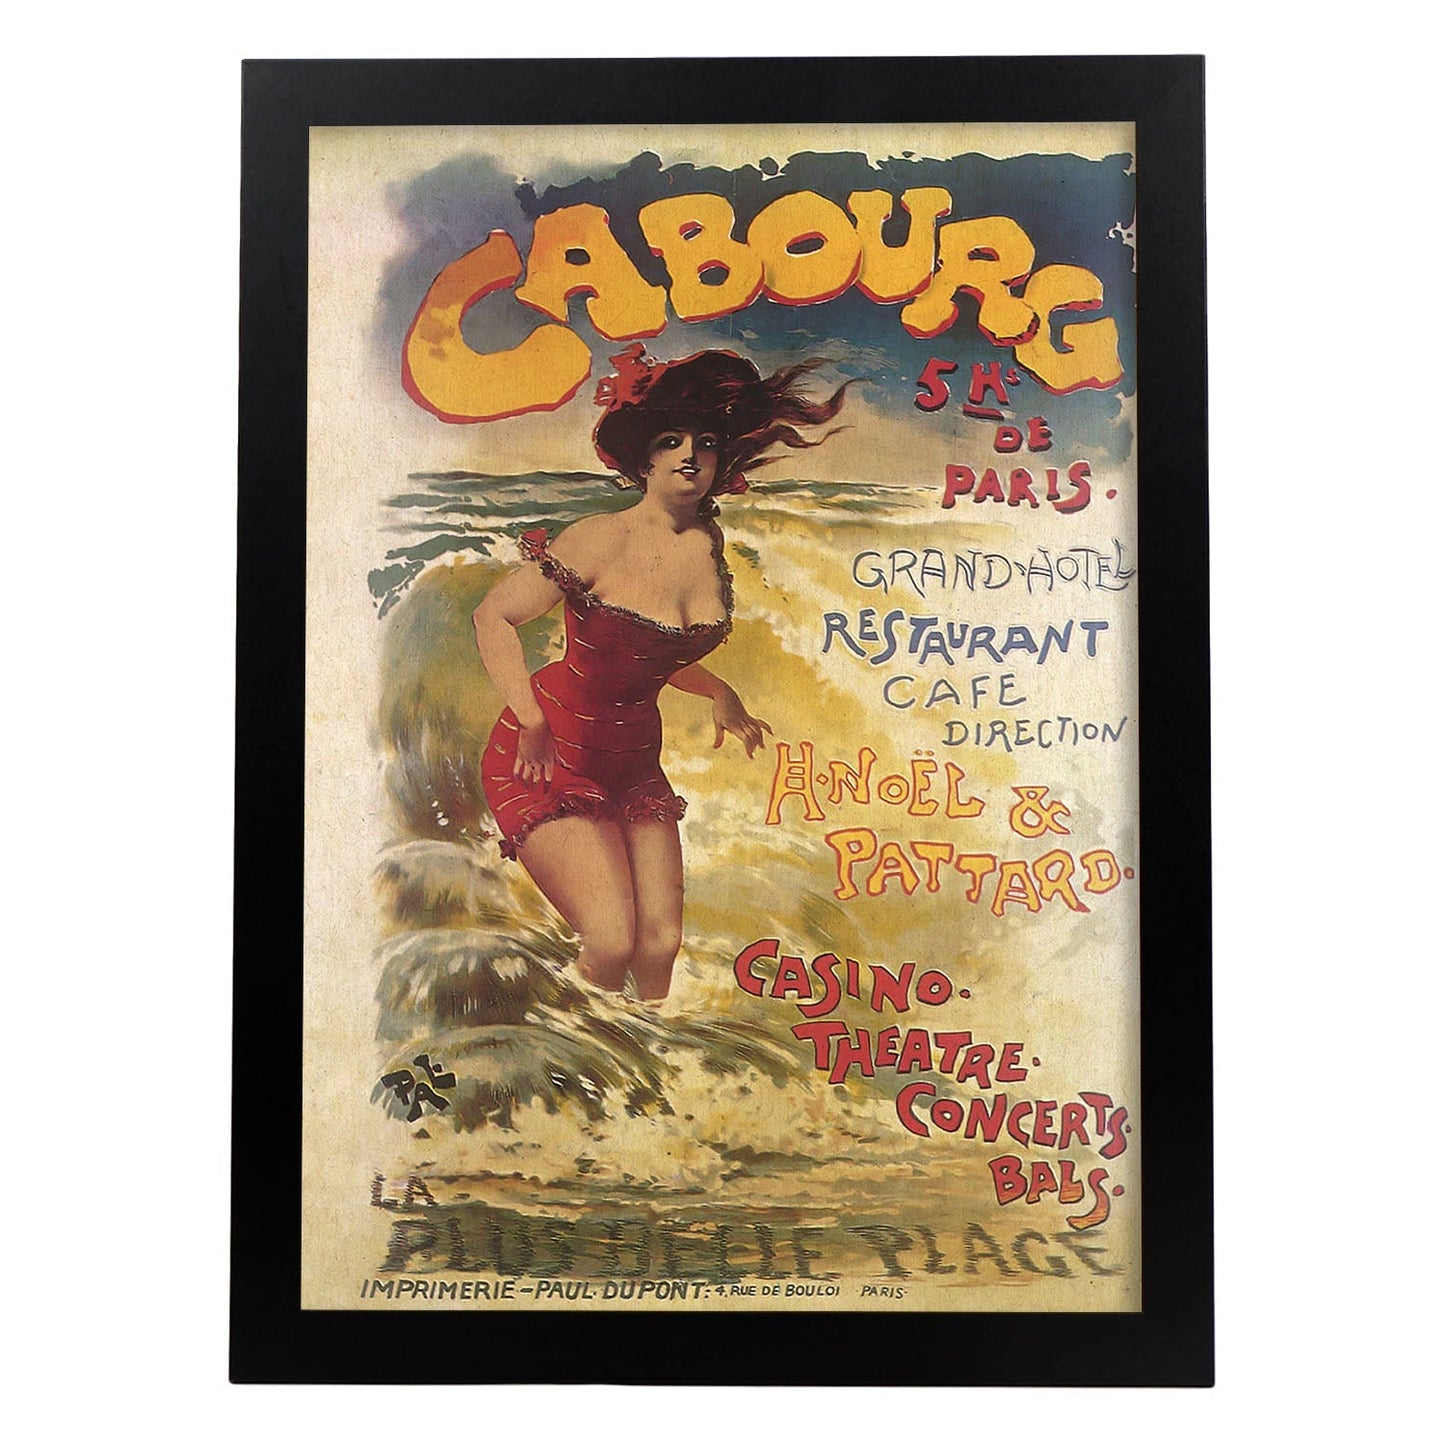 Poster vintage. Cartel vintage anuncio Casino Cabourg de Paris.-Artwork-Nacnic-A3-Marco Negro-Nacnic Estudio SL